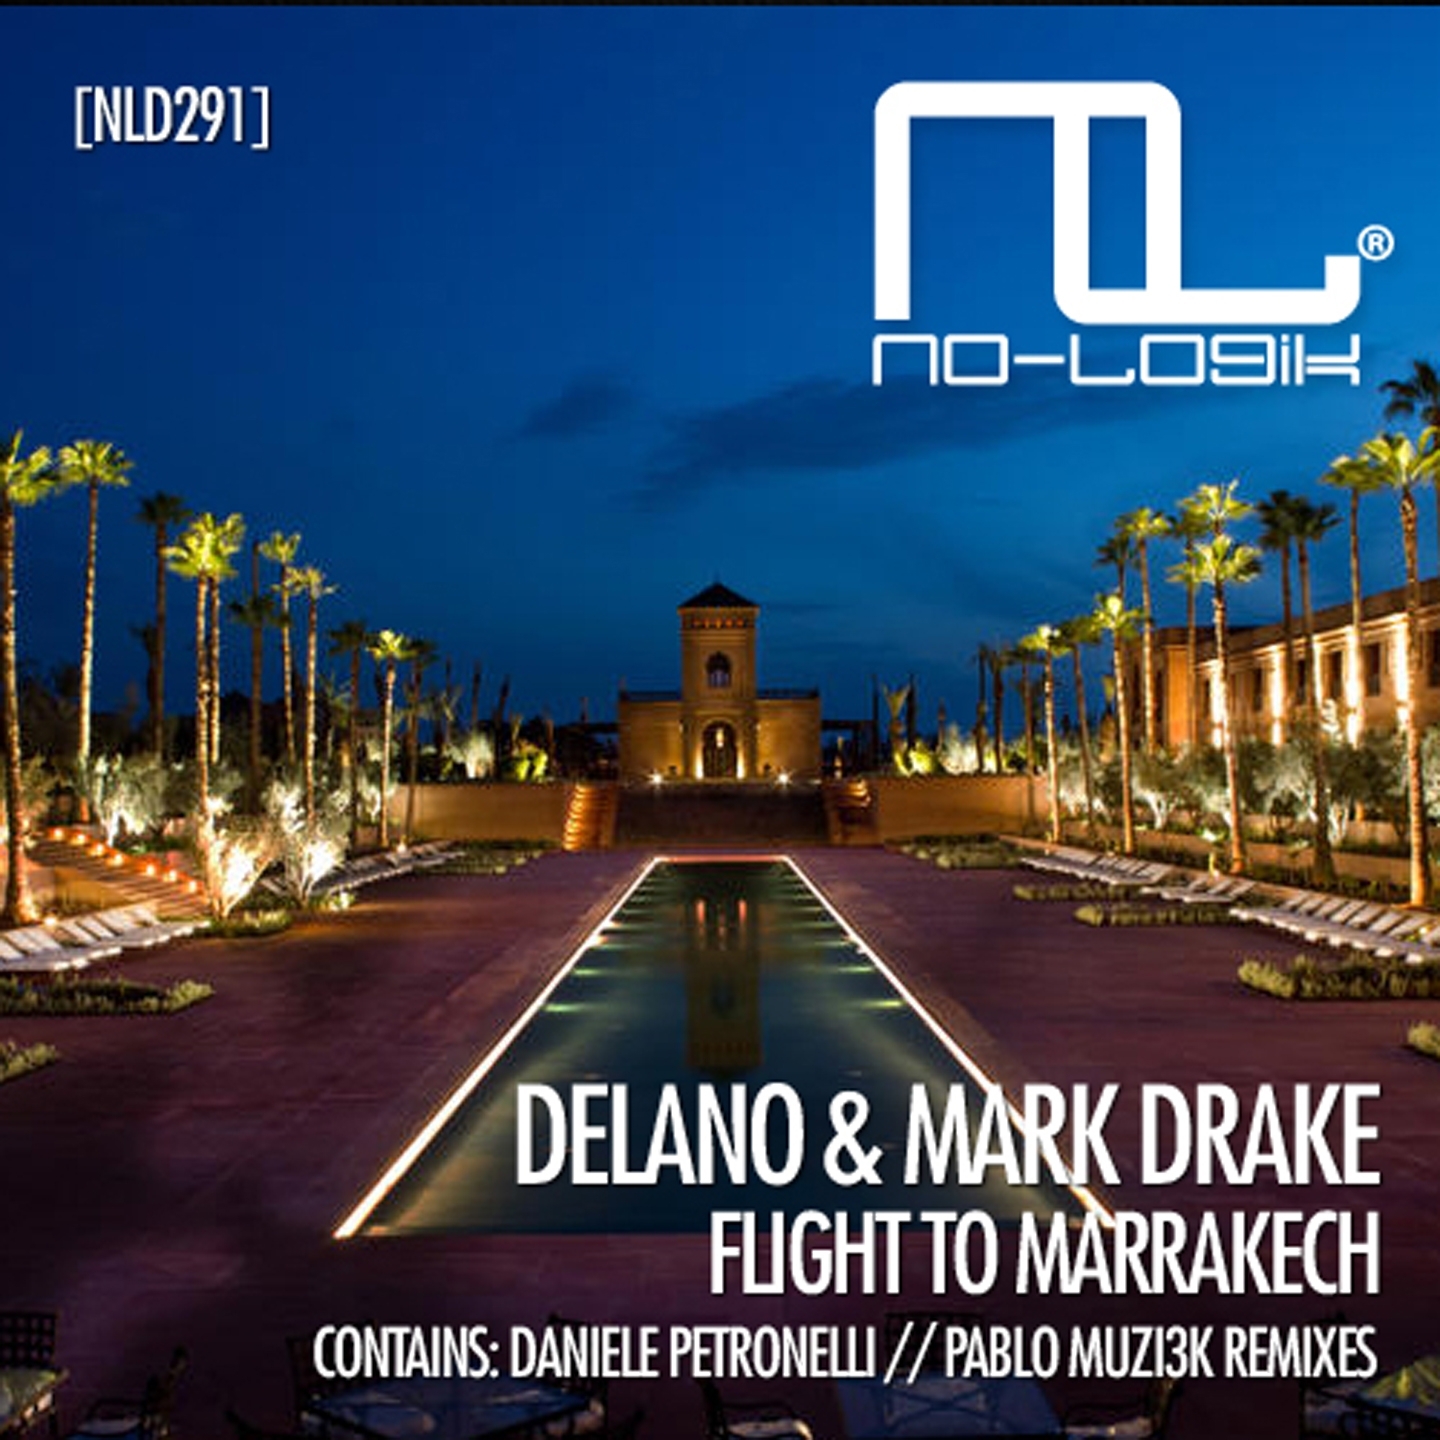 Flight to Marrakech